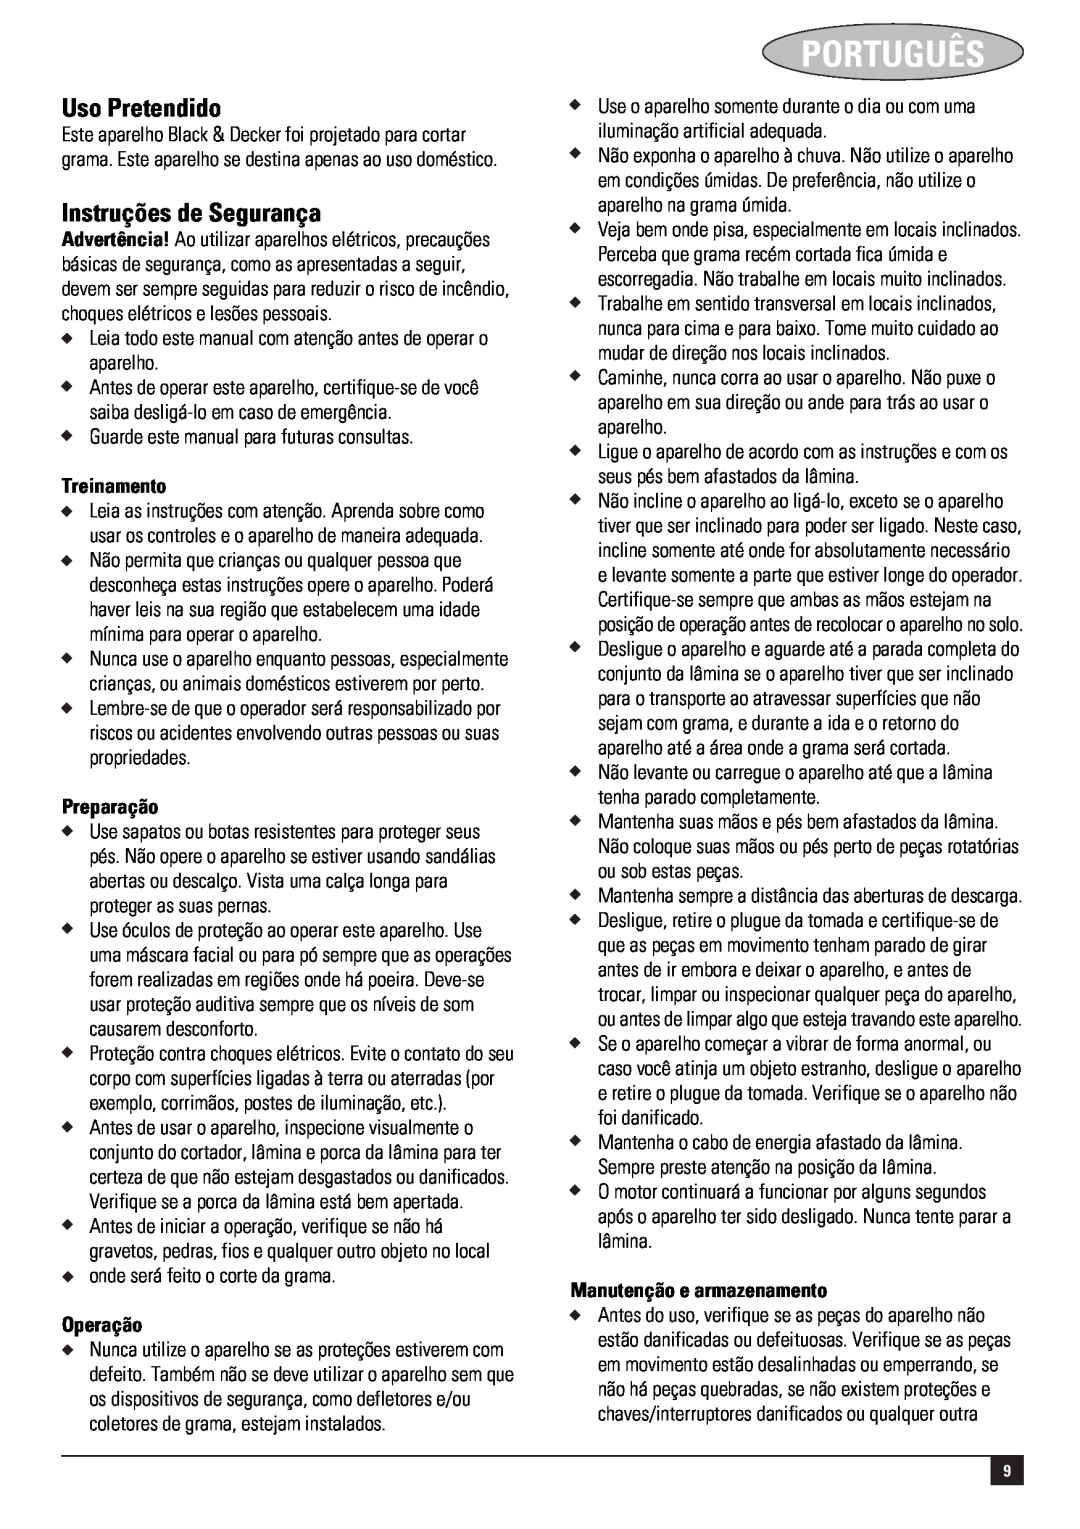 Black & Decker 661817-00, GR3800 Português, Uso Pretendido, Instruções de Segurança, Treinamento, Preparação, Operação 